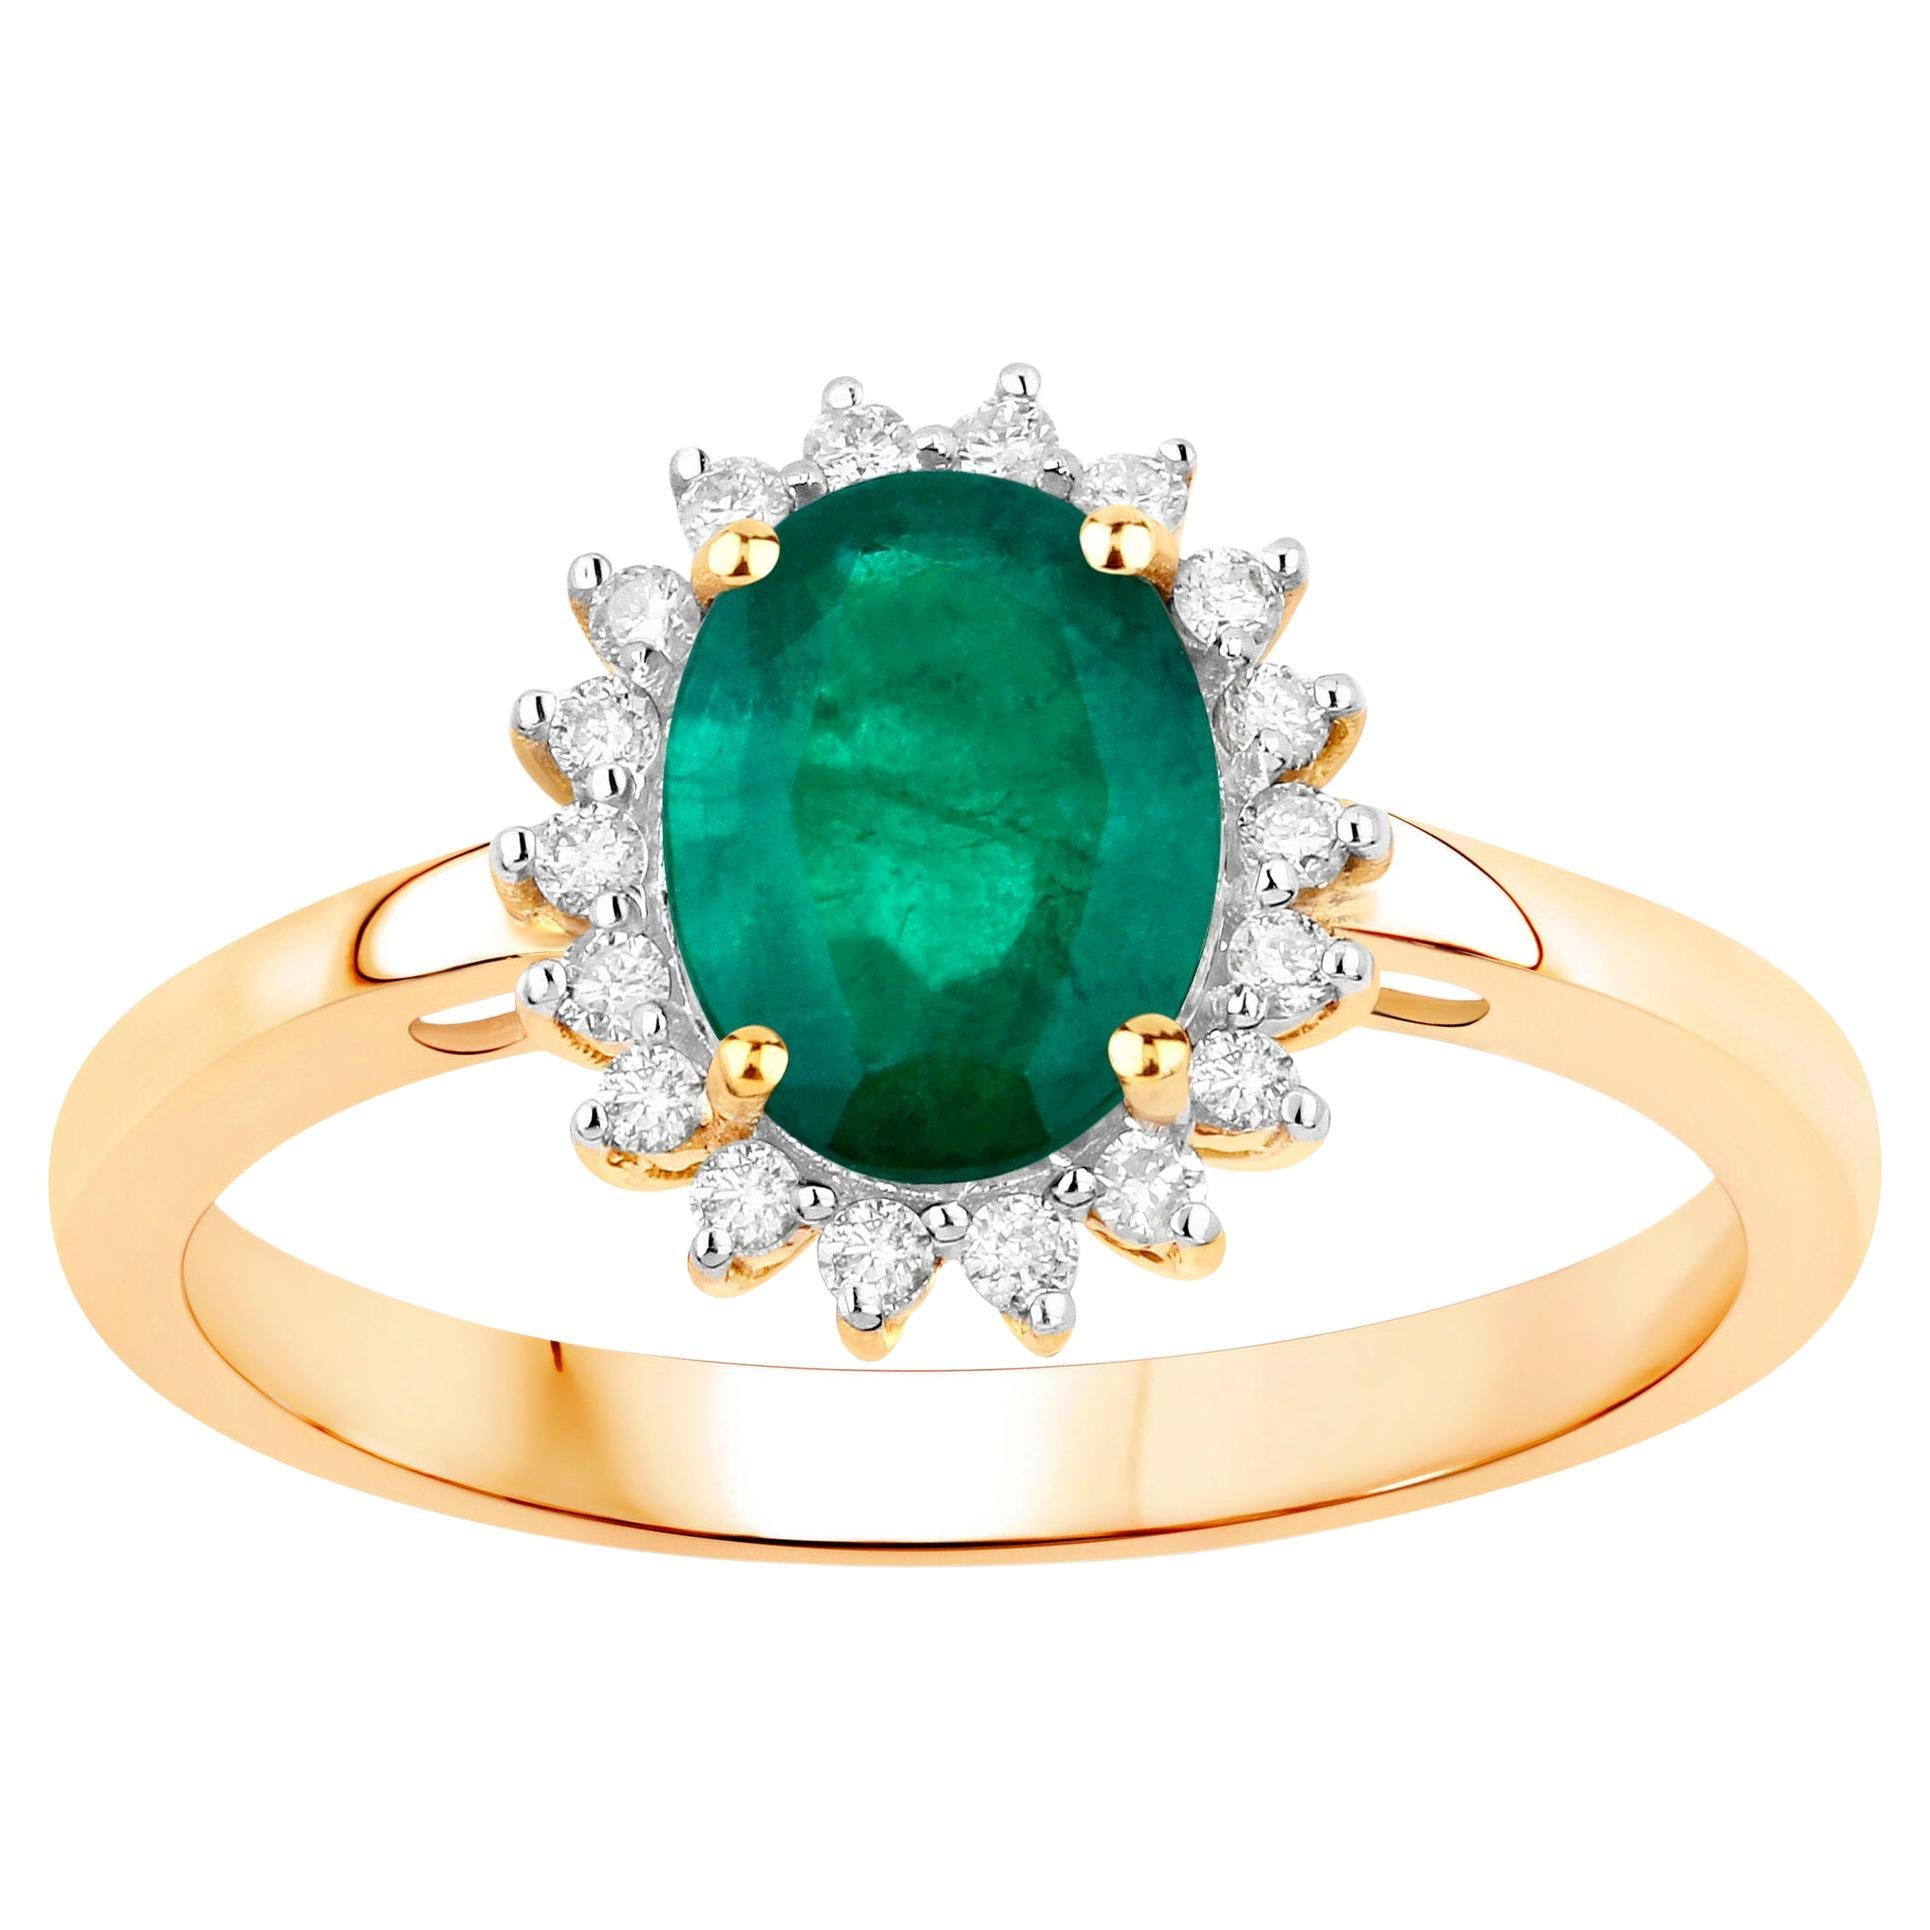 Zambian Emerald Ring With Diamonds 1.37 Carats 14K Yellow Gold